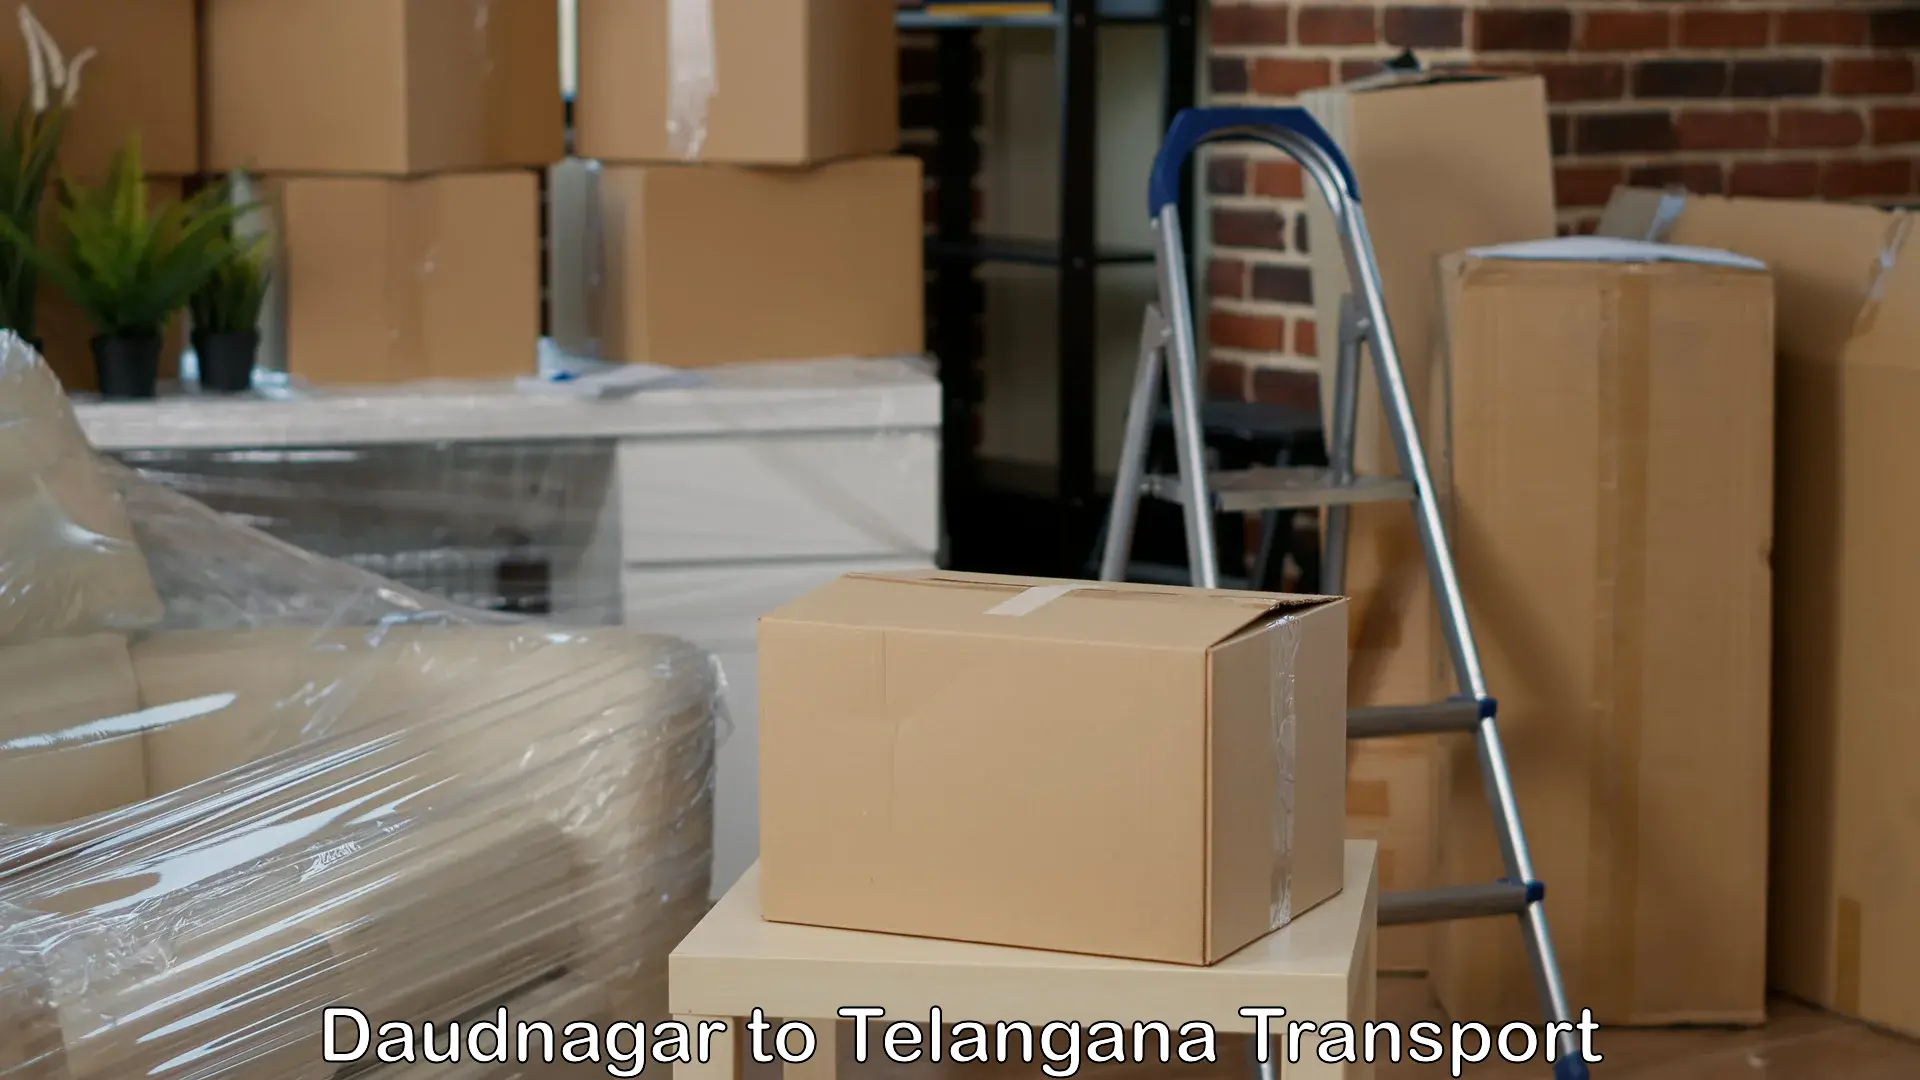 Air cargo transport services Daudnagar to Raikal